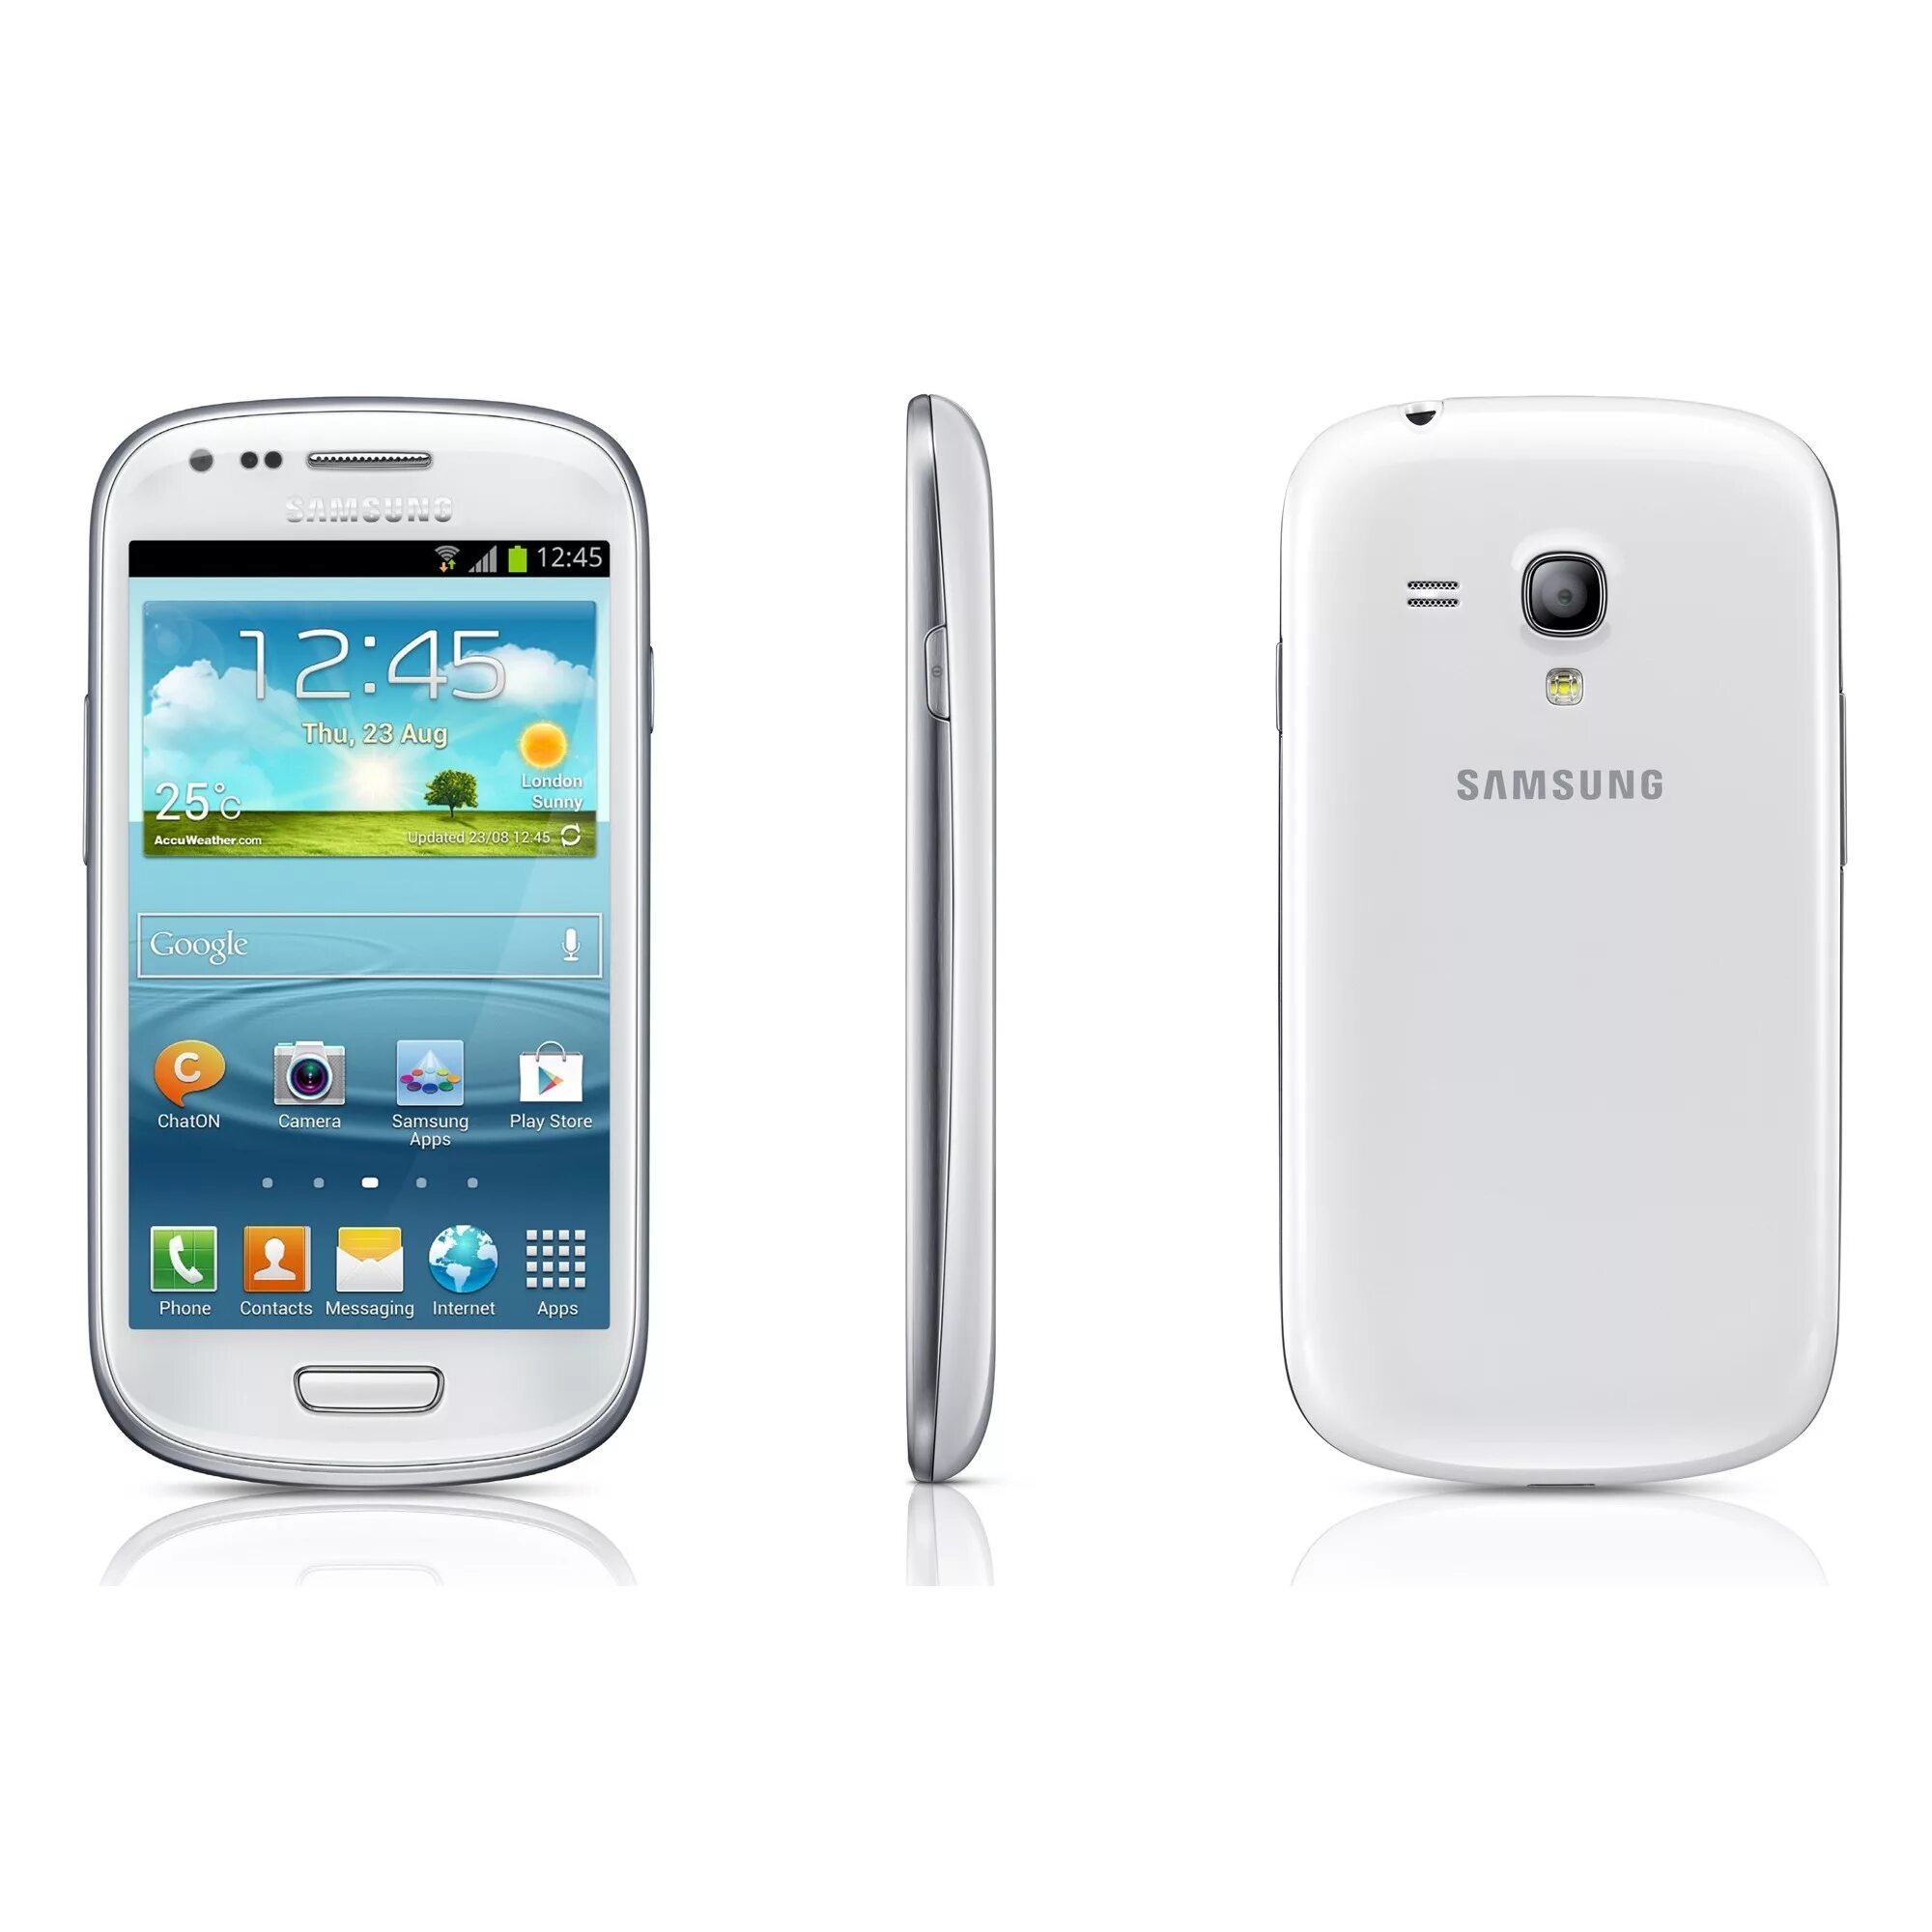 Самсунг 1 3. Самсунг s3 Mini. Samsung Galaxy s3. Самсунг гелакси s3 мини. Самсунг галакси с 3 мини.